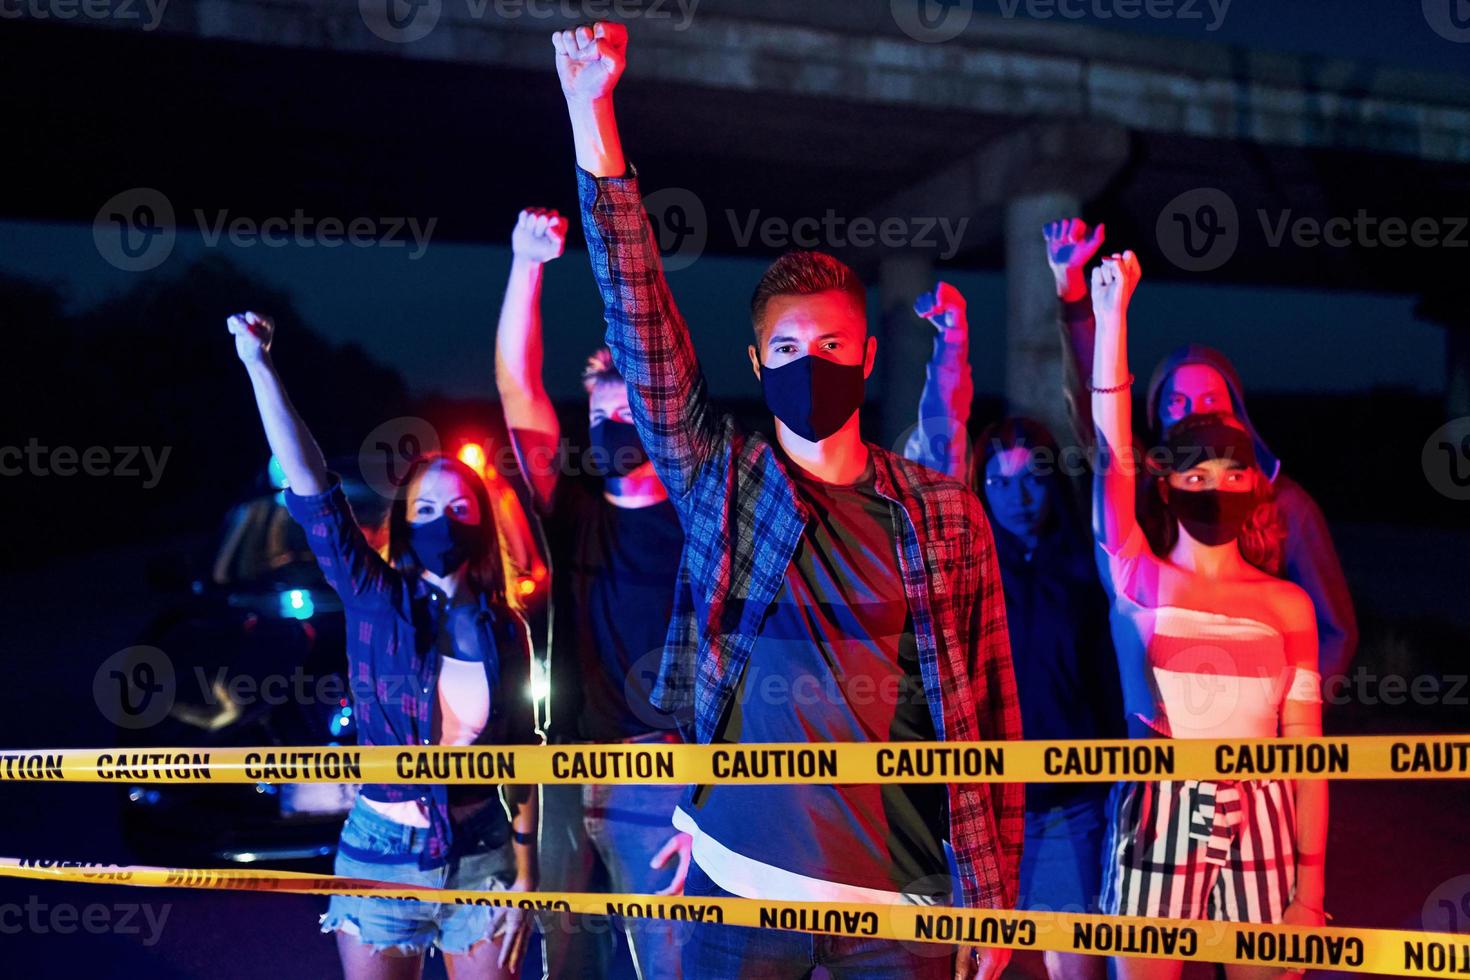 iluminación policial roja y azul. grupo de jóvenes que protestan que se unen. activista por los derechos humanos o contra el gobierno foto